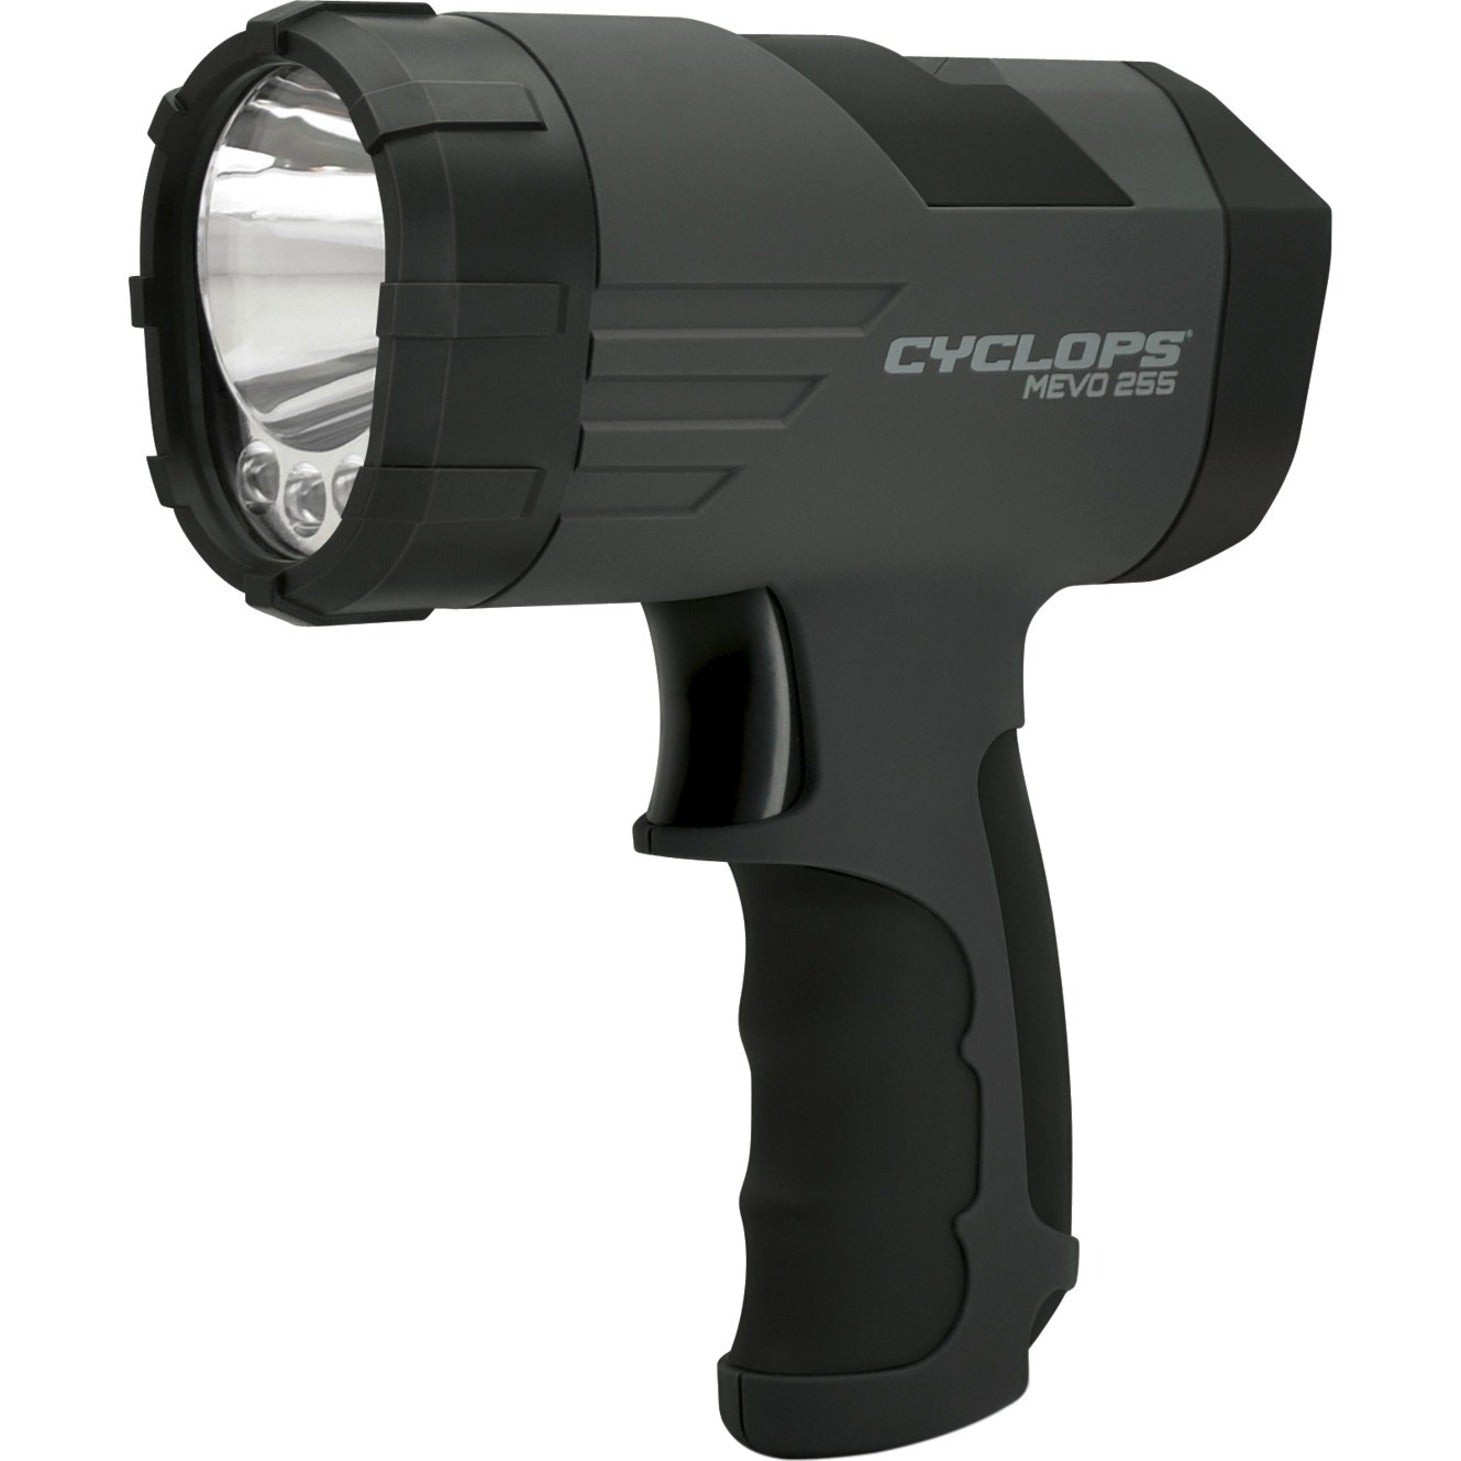 Cyclops CYC-X255H Mevo 255 Light Weight Spotlight - 255 Lumens, Compact, Durable, Lightweight, Rubber Grip, Ergonomic